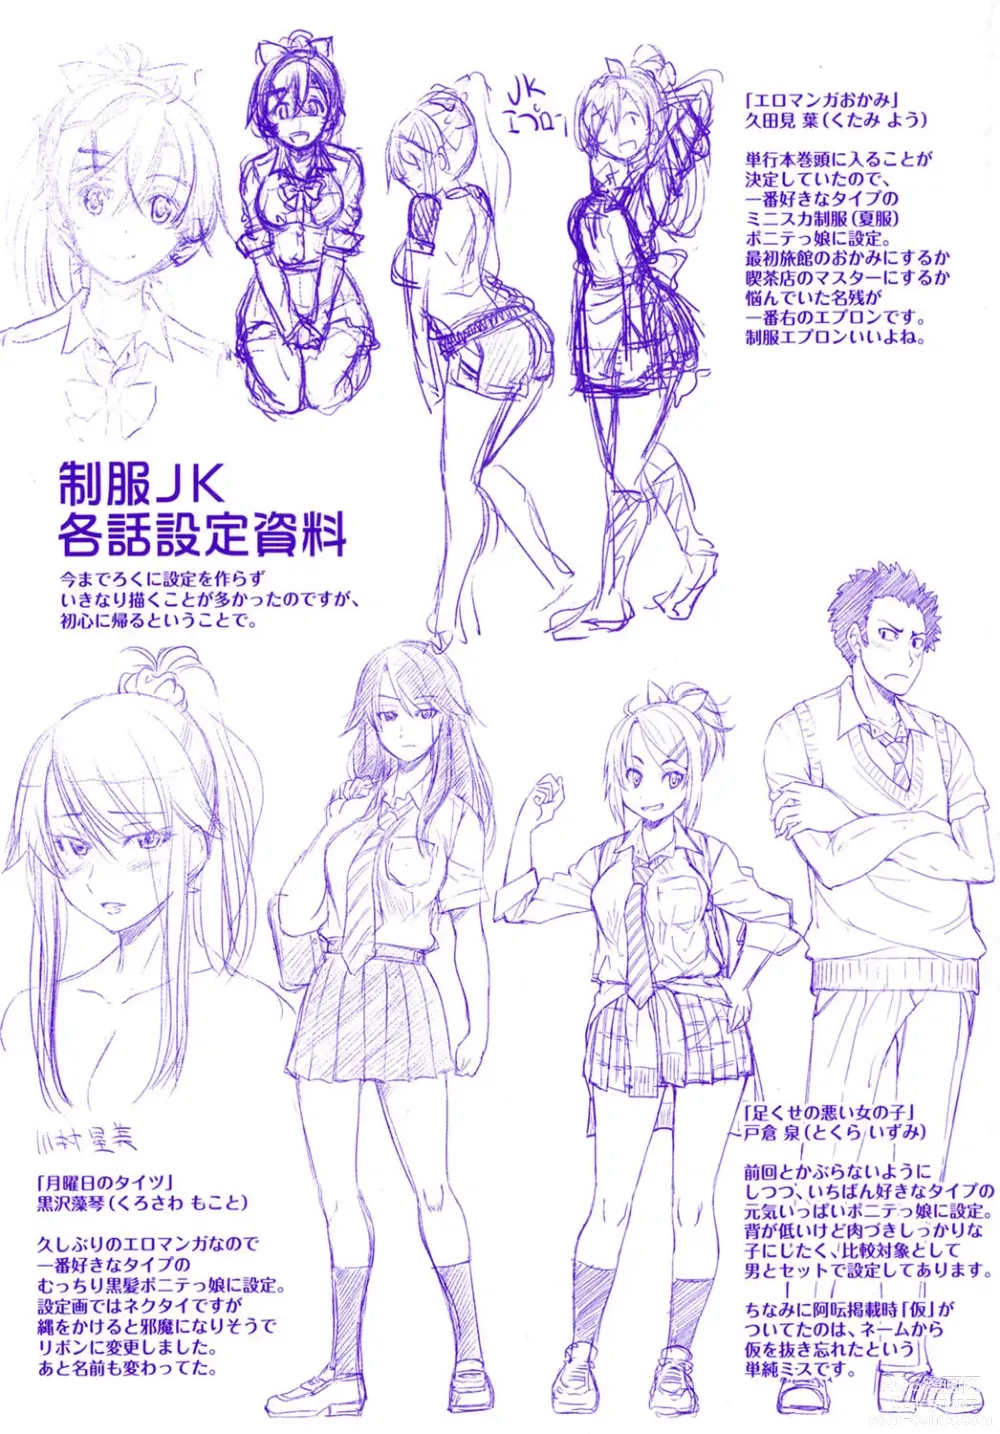 Page 199 of manga Seifuku JK